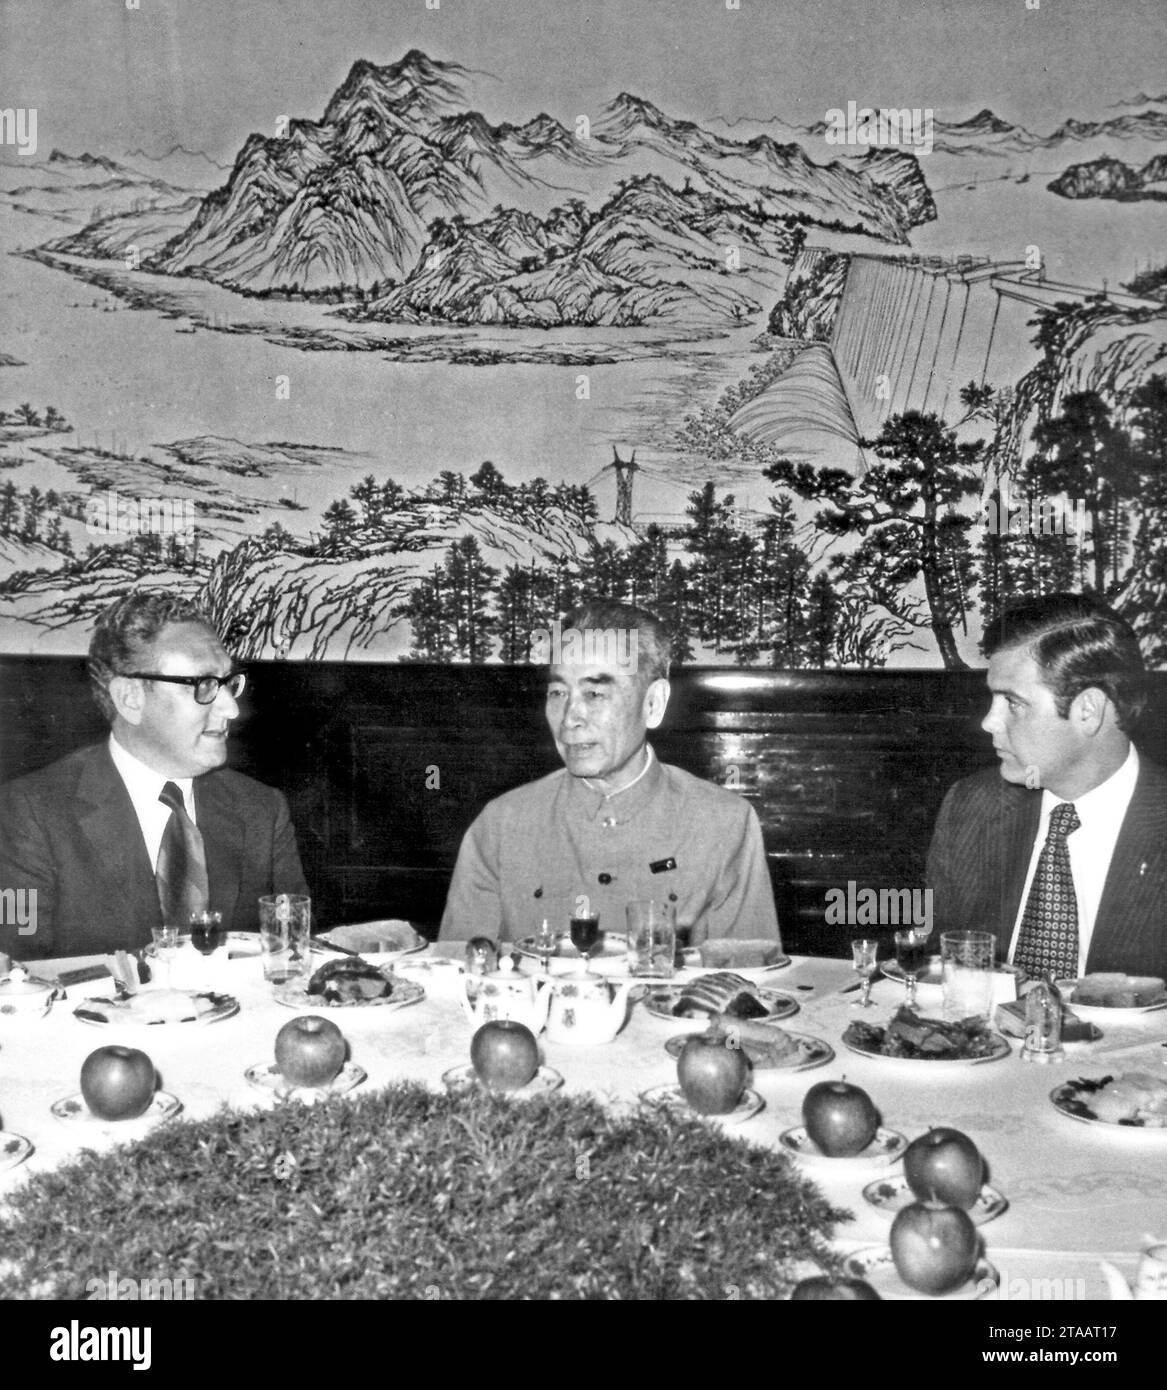 HENRY KISSINGER (né Heinz Alfred Kissinger ; 27 mai 1923 - 29 novembre 2023) était un diplomate américain, politologue, consultant géopolitique et homme politique qui a servi comme secrétaire d'État et conseiller à la sécurité nationale des États-Unis sous les administrations présidentielles de Richard Nixon et Gerald Ford. Pour ses actions de négociation d'un cessez-le-feu au Vietnam, Kissinger a reçu le prix Nobel de la paix 1973 dans des circonstances controversées. PHOTO PRISE LE : 20 octobre 1971, Pékin, Chine : (G-D) HENRY KISSINGER, adjoint du président des États-Unis pour les affaires de sécurité nationale Banque D'Images